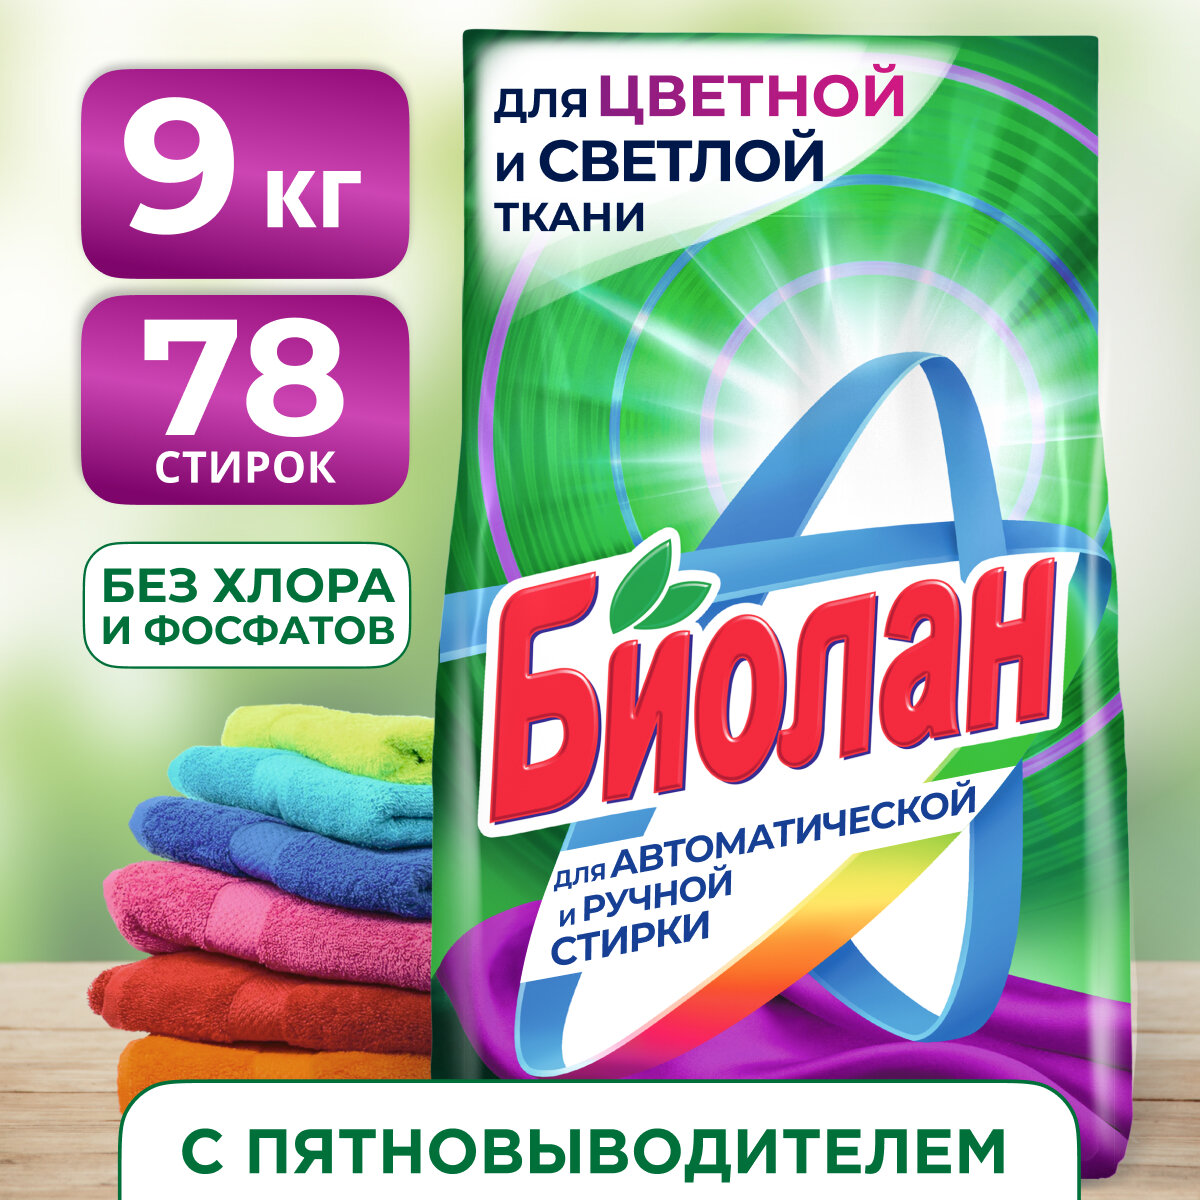 Стиральный порошок Биолан Color (автомат), 9 кг — купить в интернет-магазине по низкой цене на Яндекс Маркете